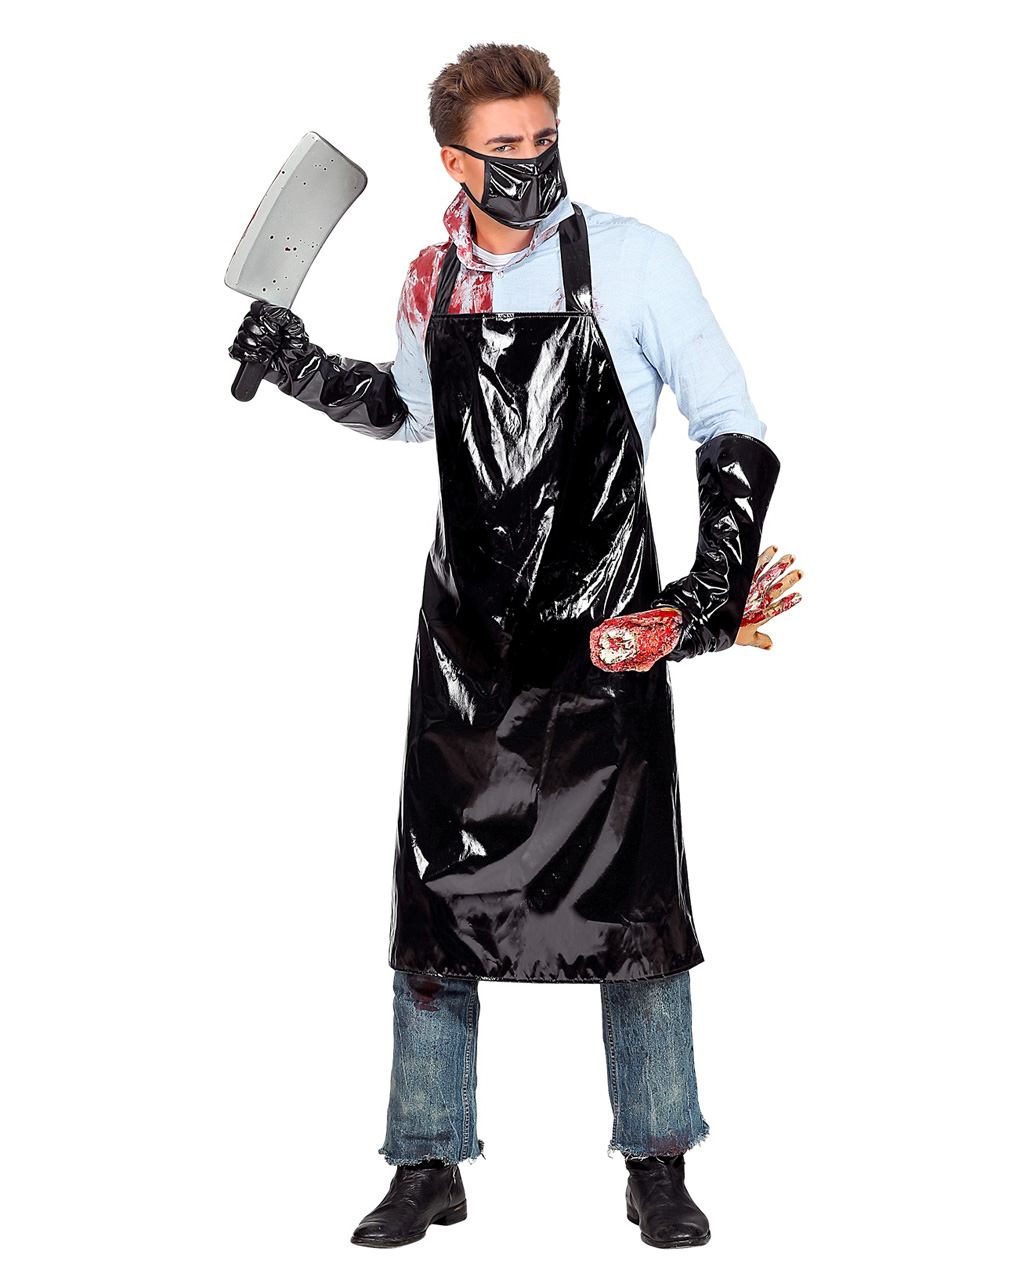 serienkiller schuerze mit handschuhe serienmoerder schuerze mit handschuhe serial killer apron with gloves 39139 01